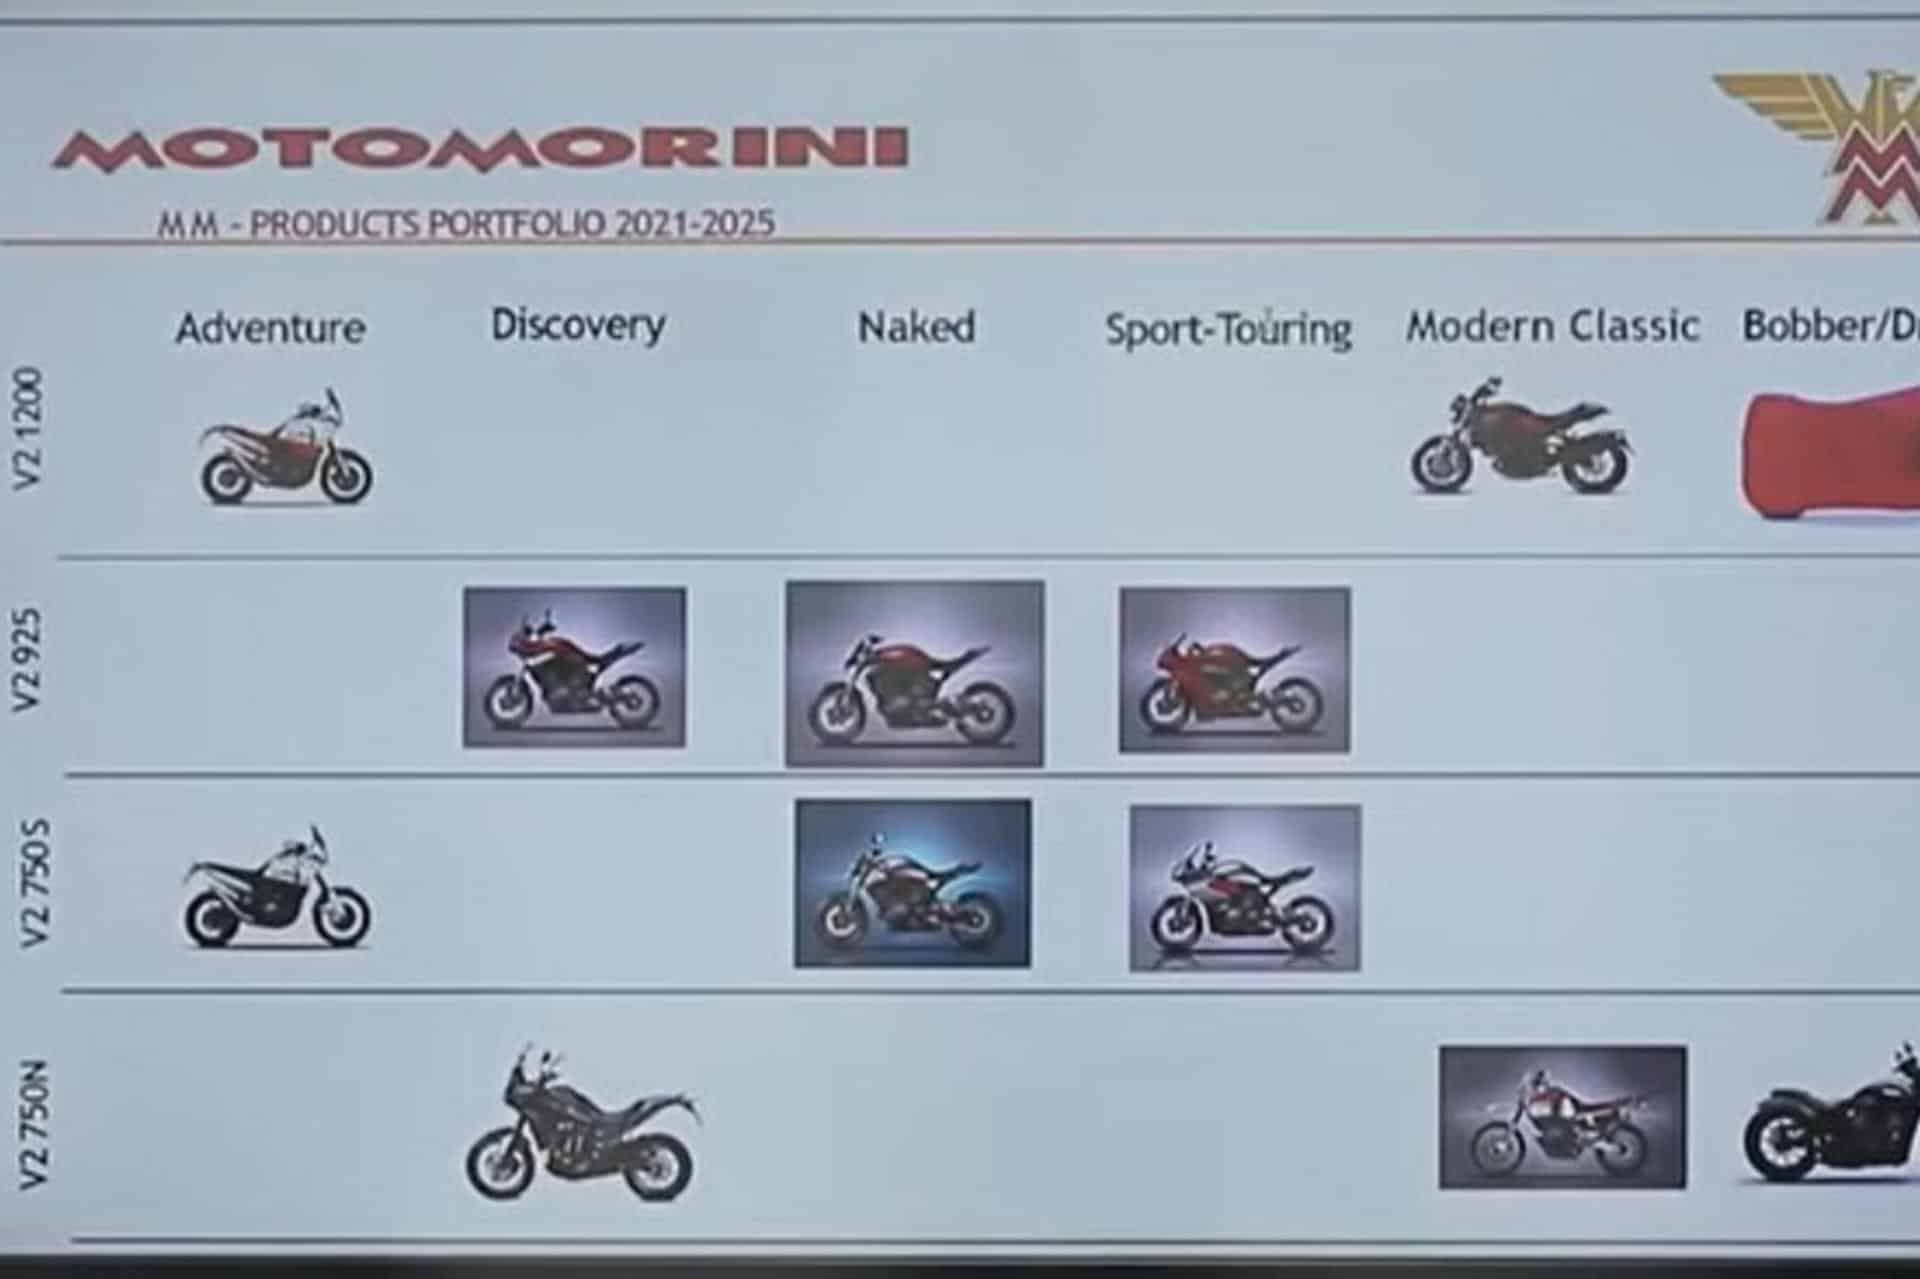 Calendario modelos Moto Morini 2021/2025